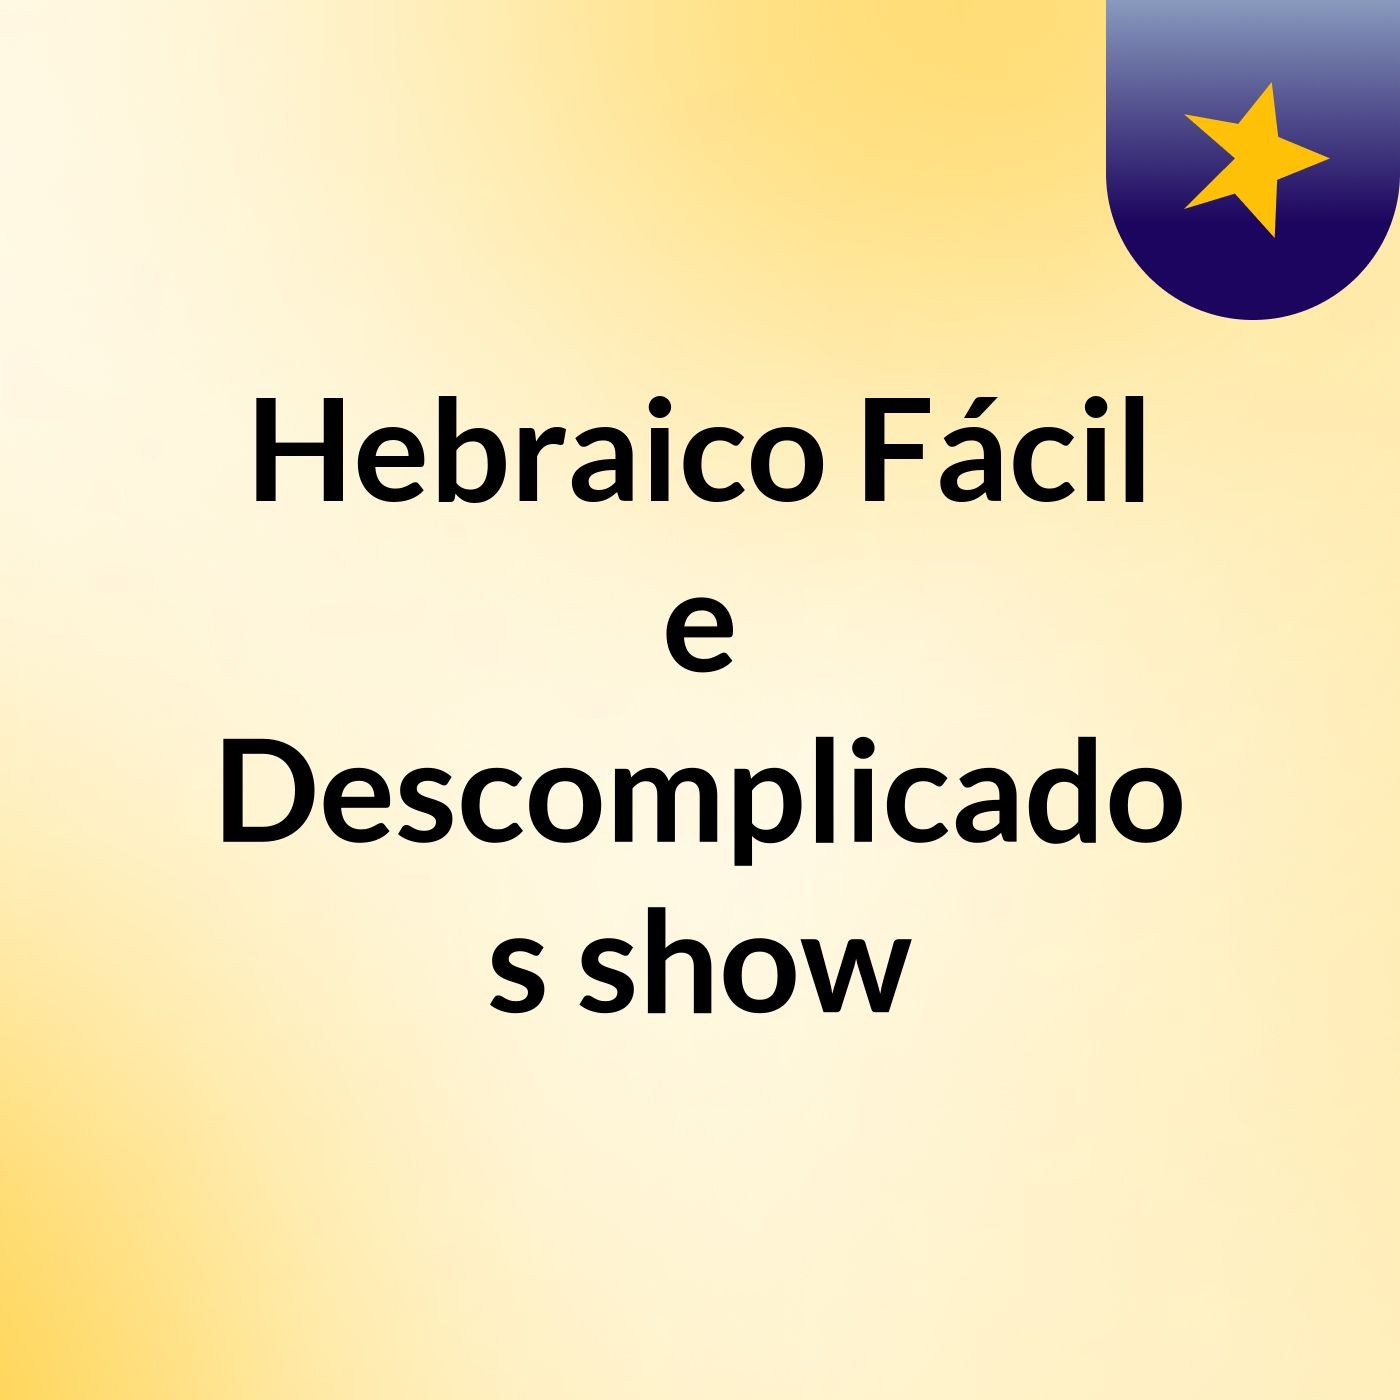 Hebraico Fácil e Descomplicado's show